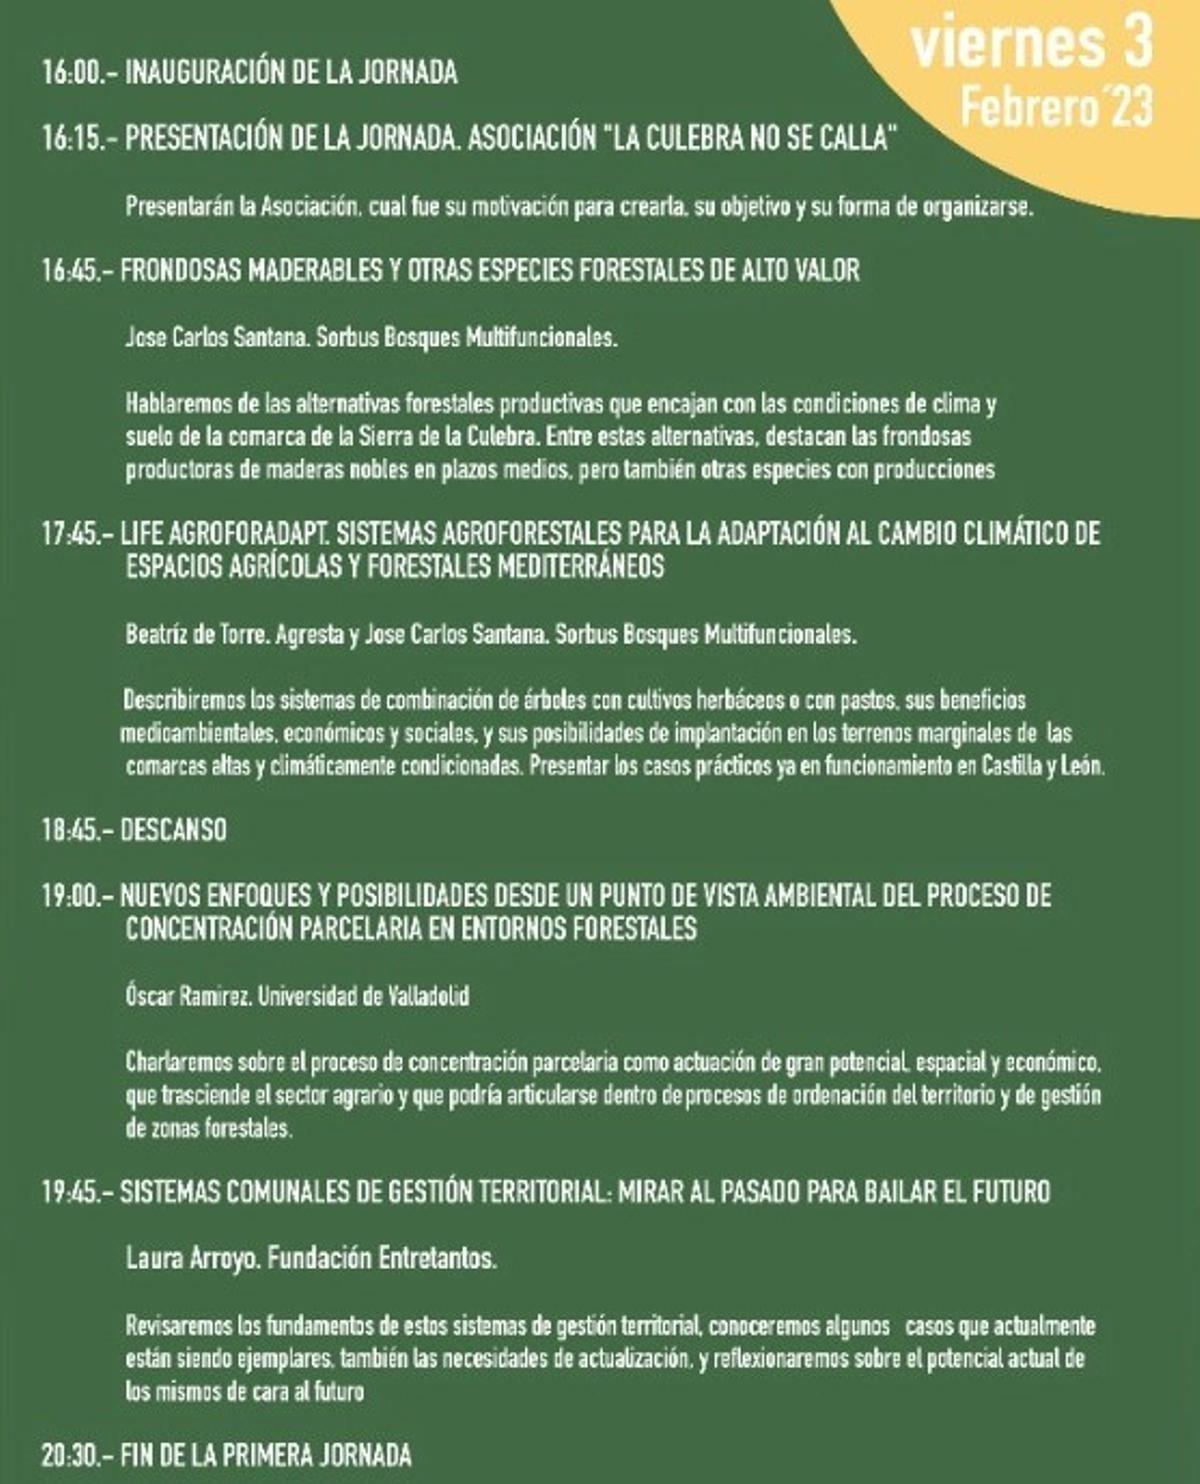 Programa completo del viernes de las jornadas sobre gestión forestal que se celebrarán en Tábara.